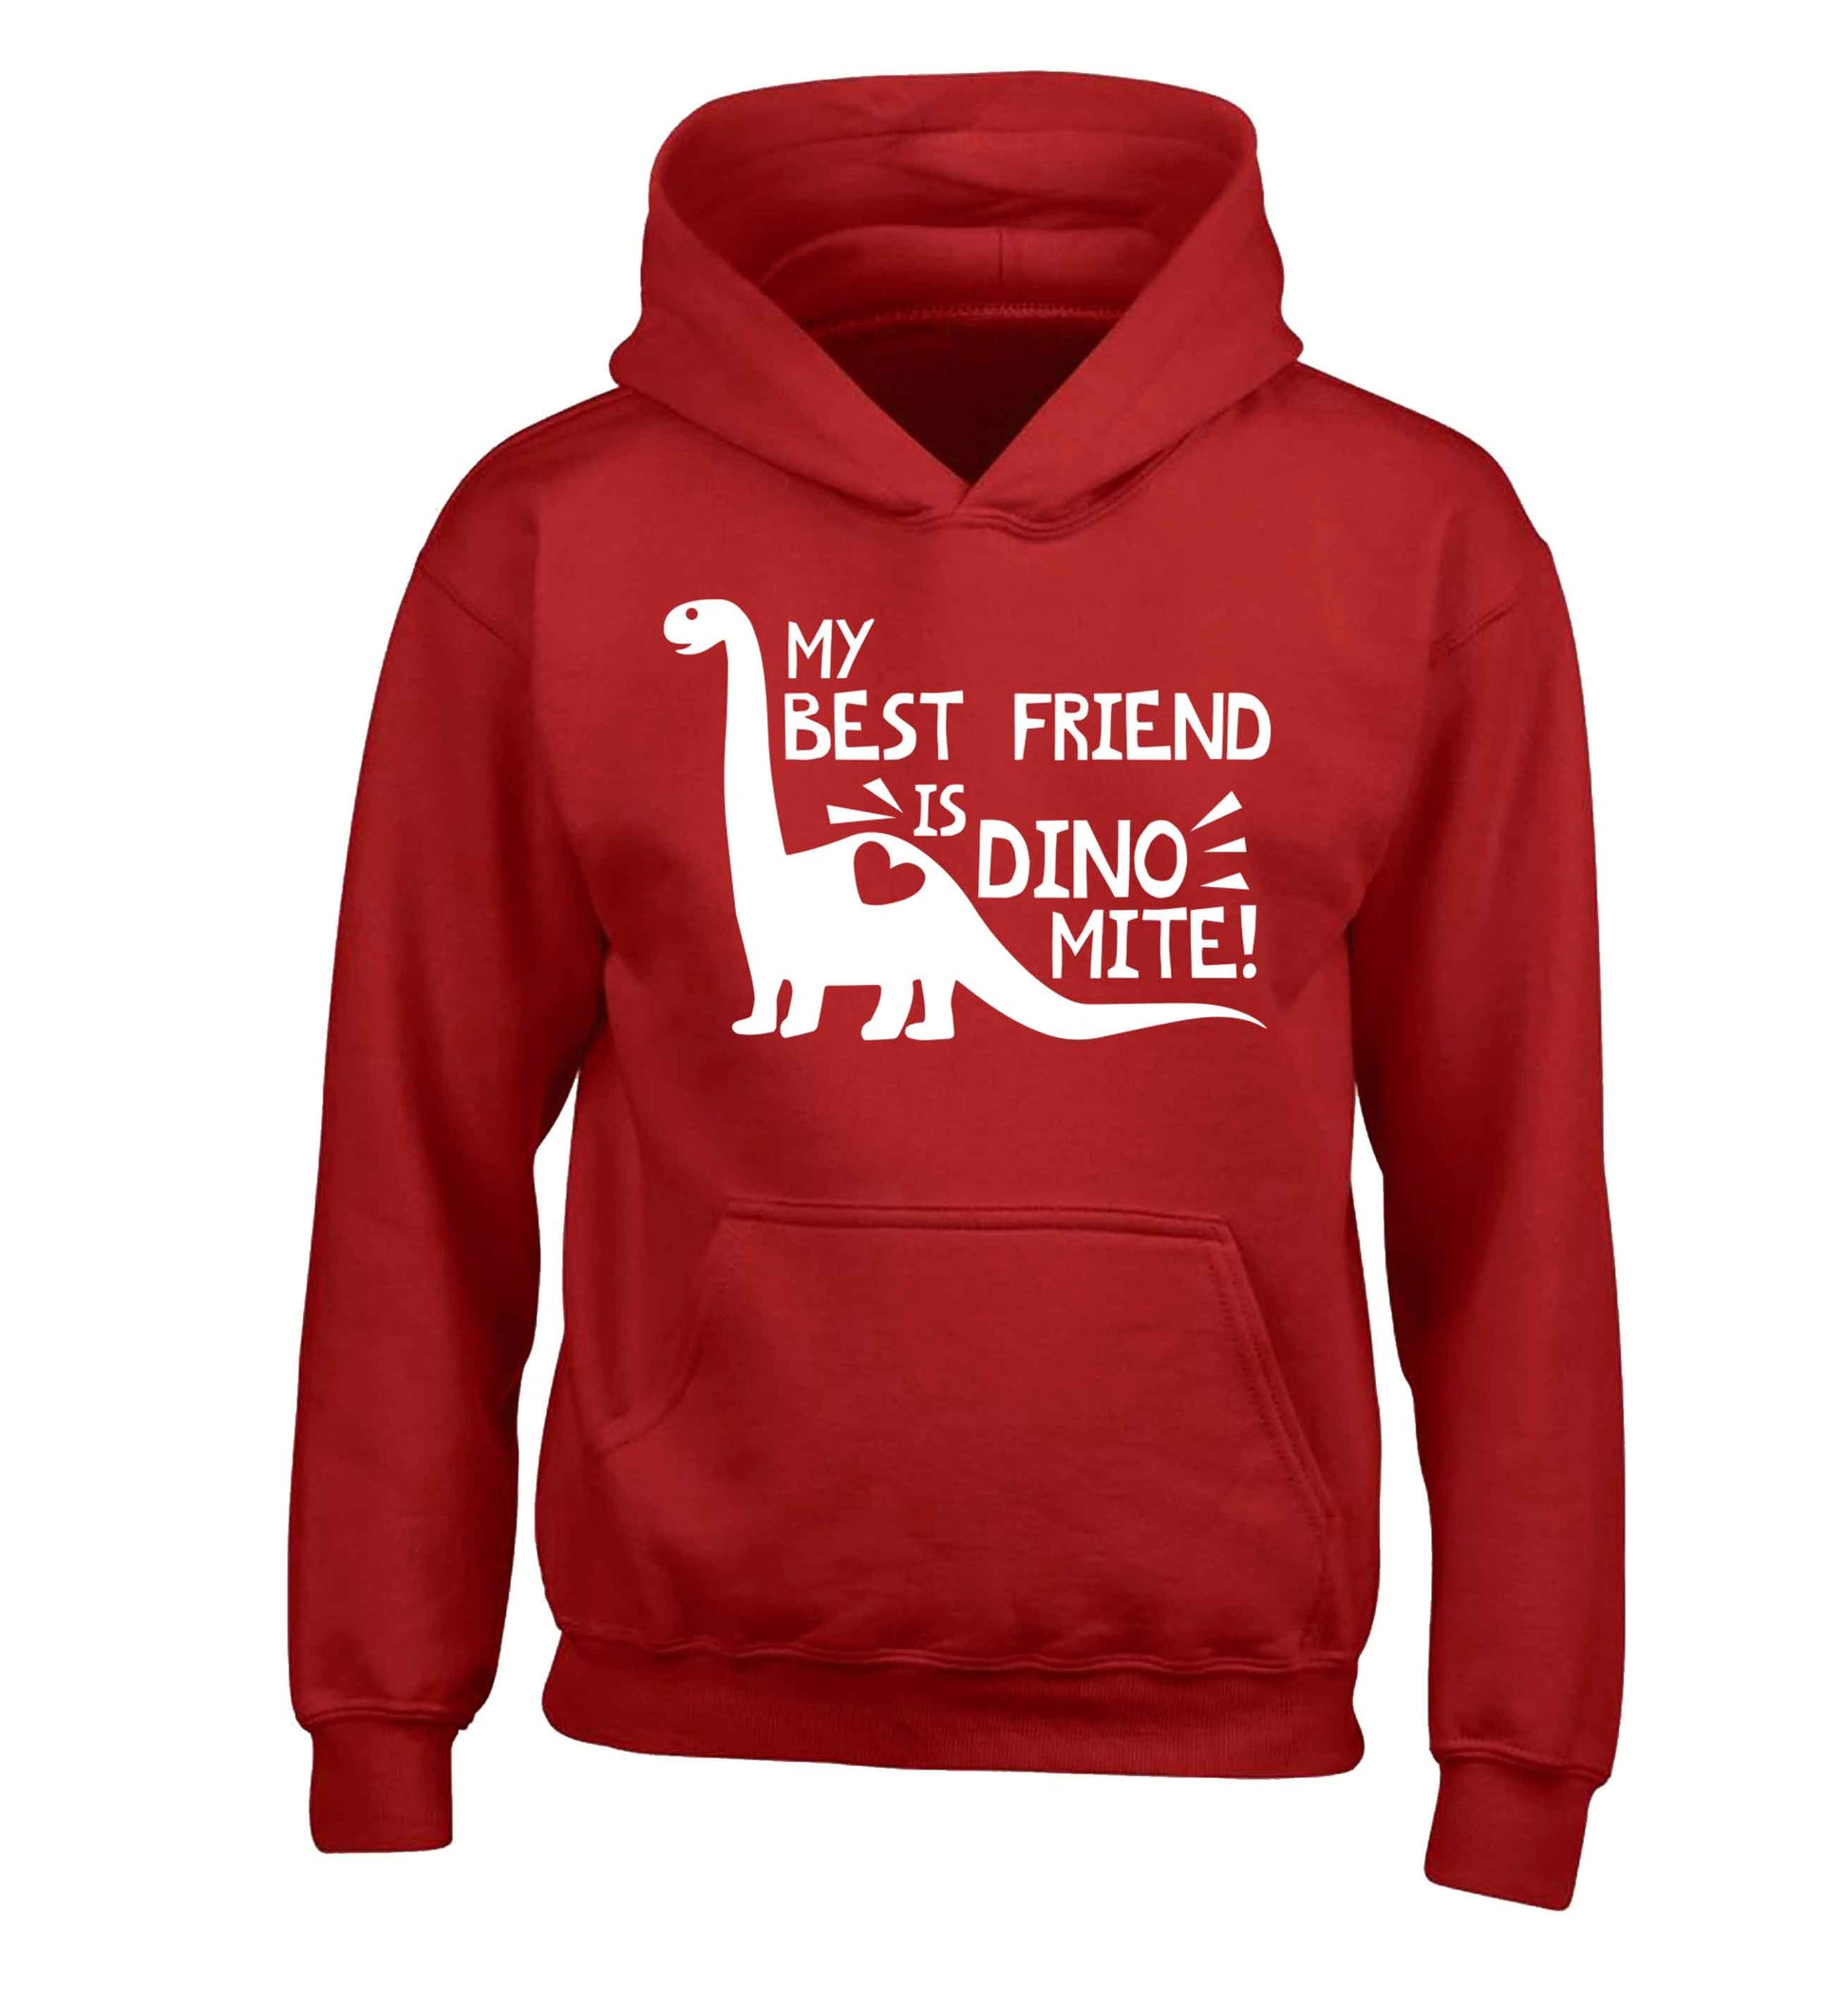 My best friend is dinomite! children's red hoodie 12-13 Years